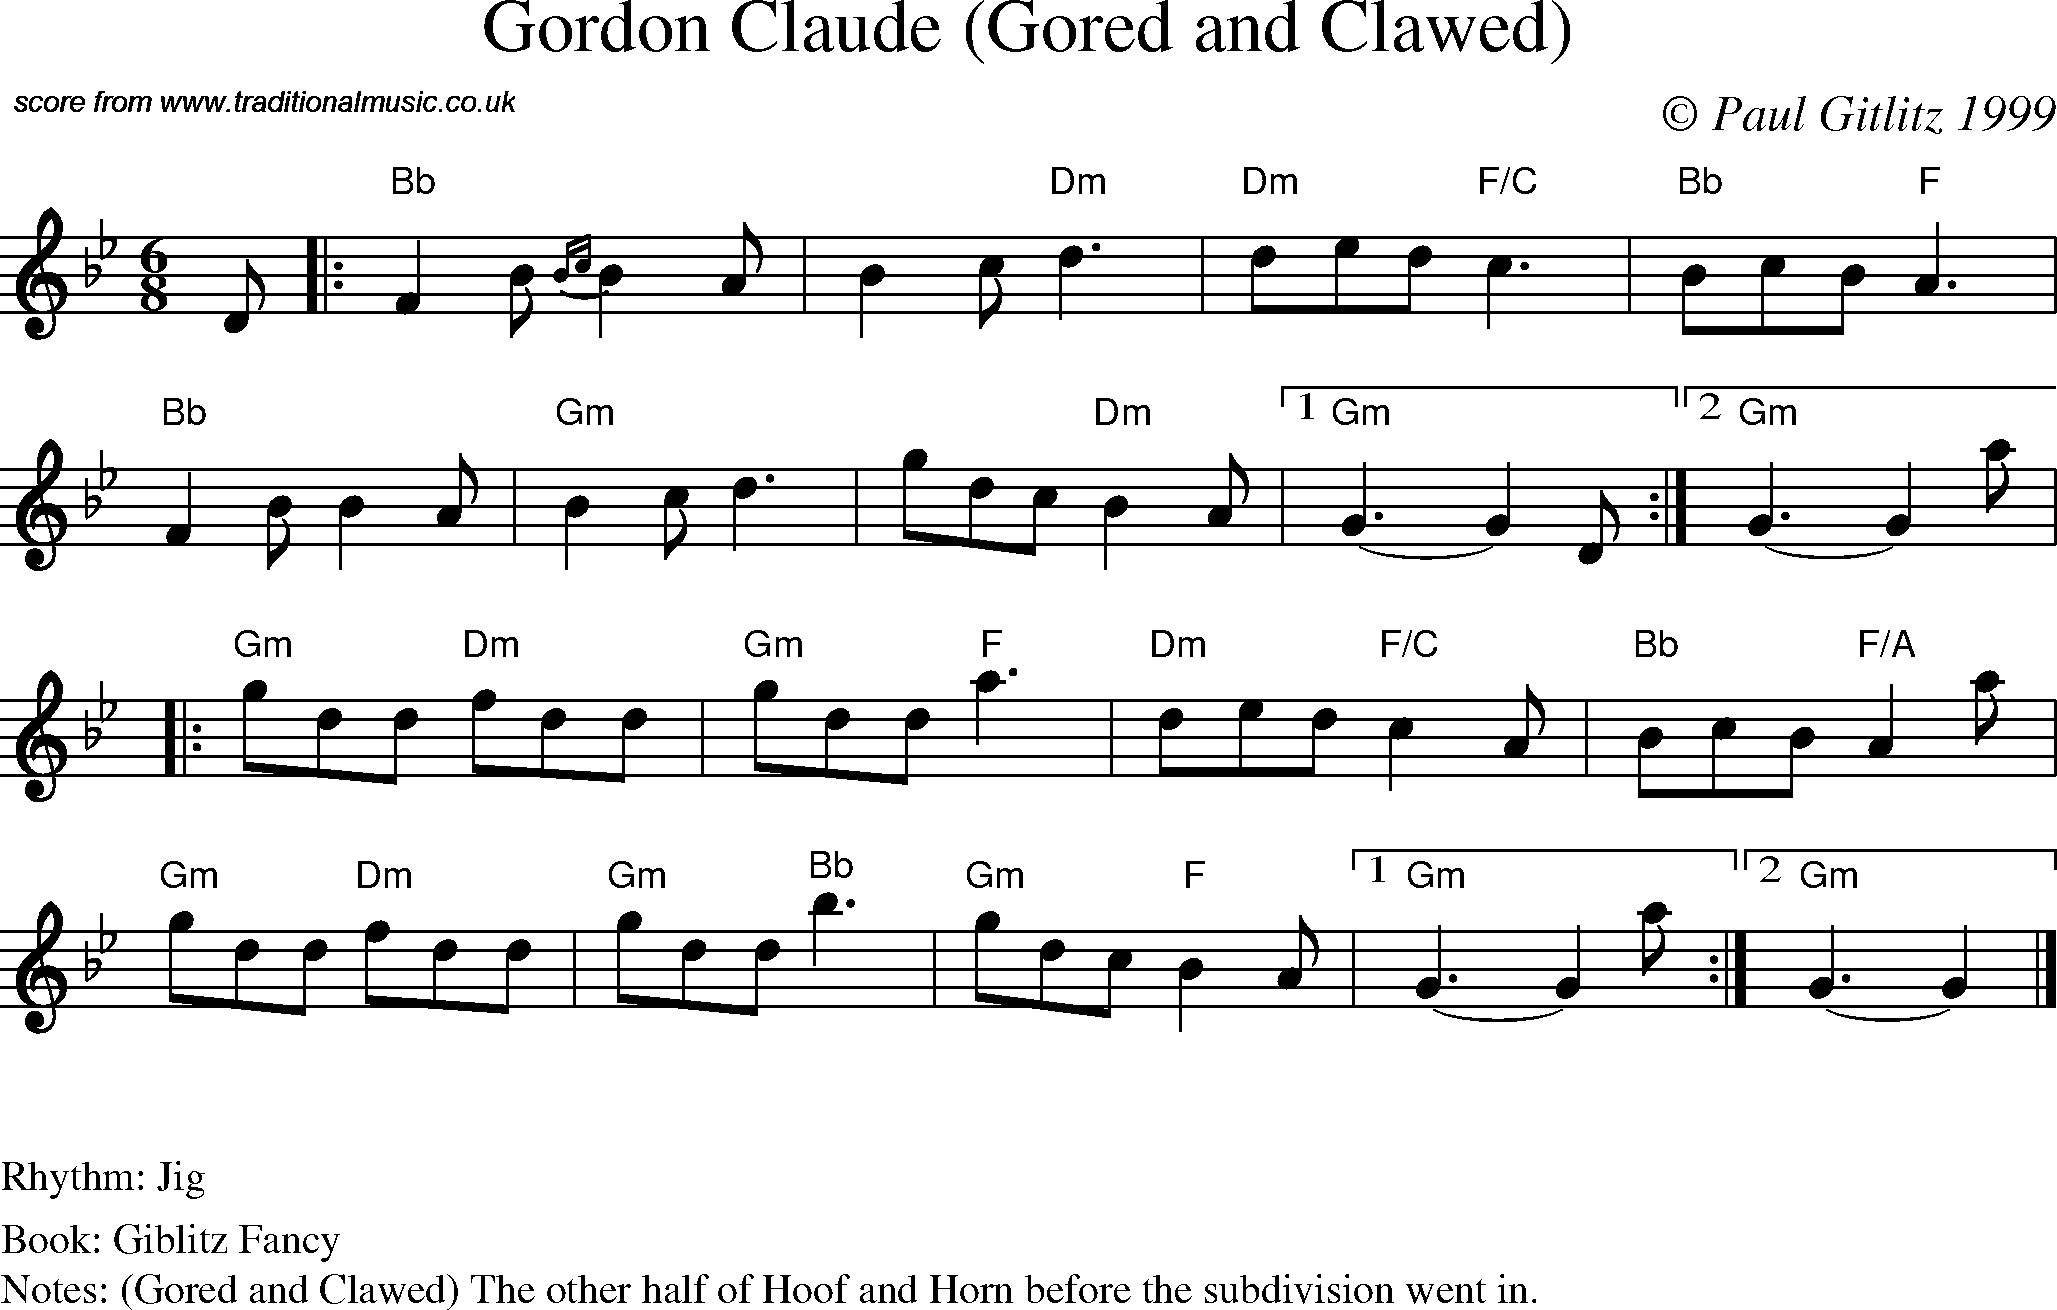 Sheet Music Score for Jig - Gordon Claude